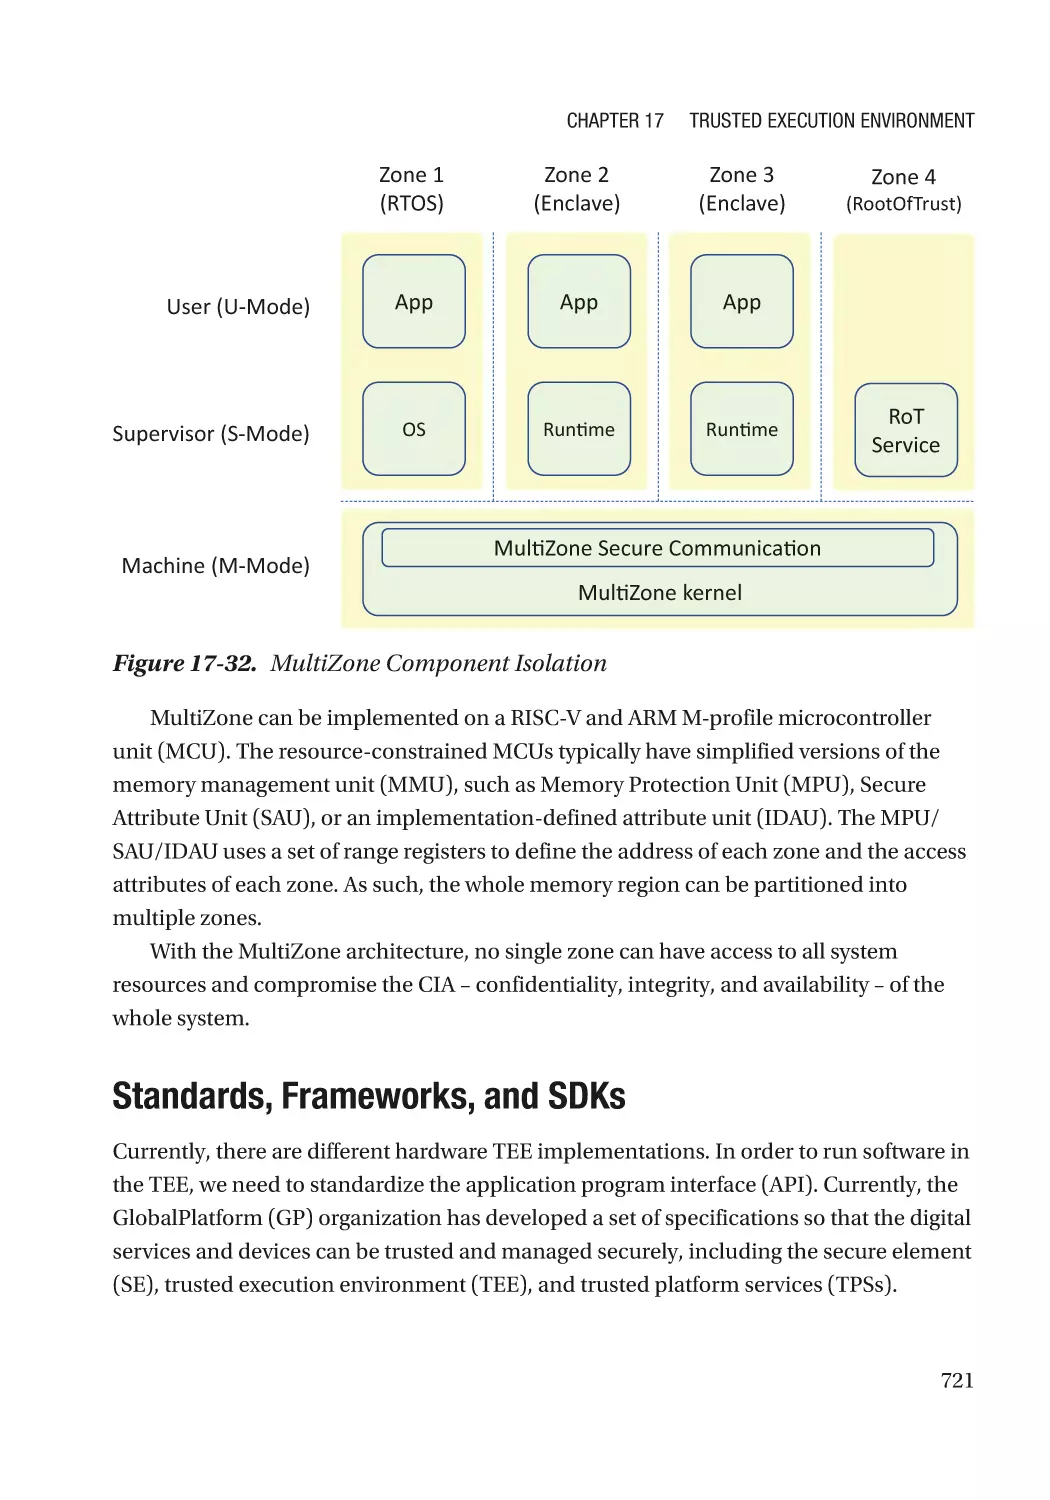 Standards, Frameworks, and SDKs